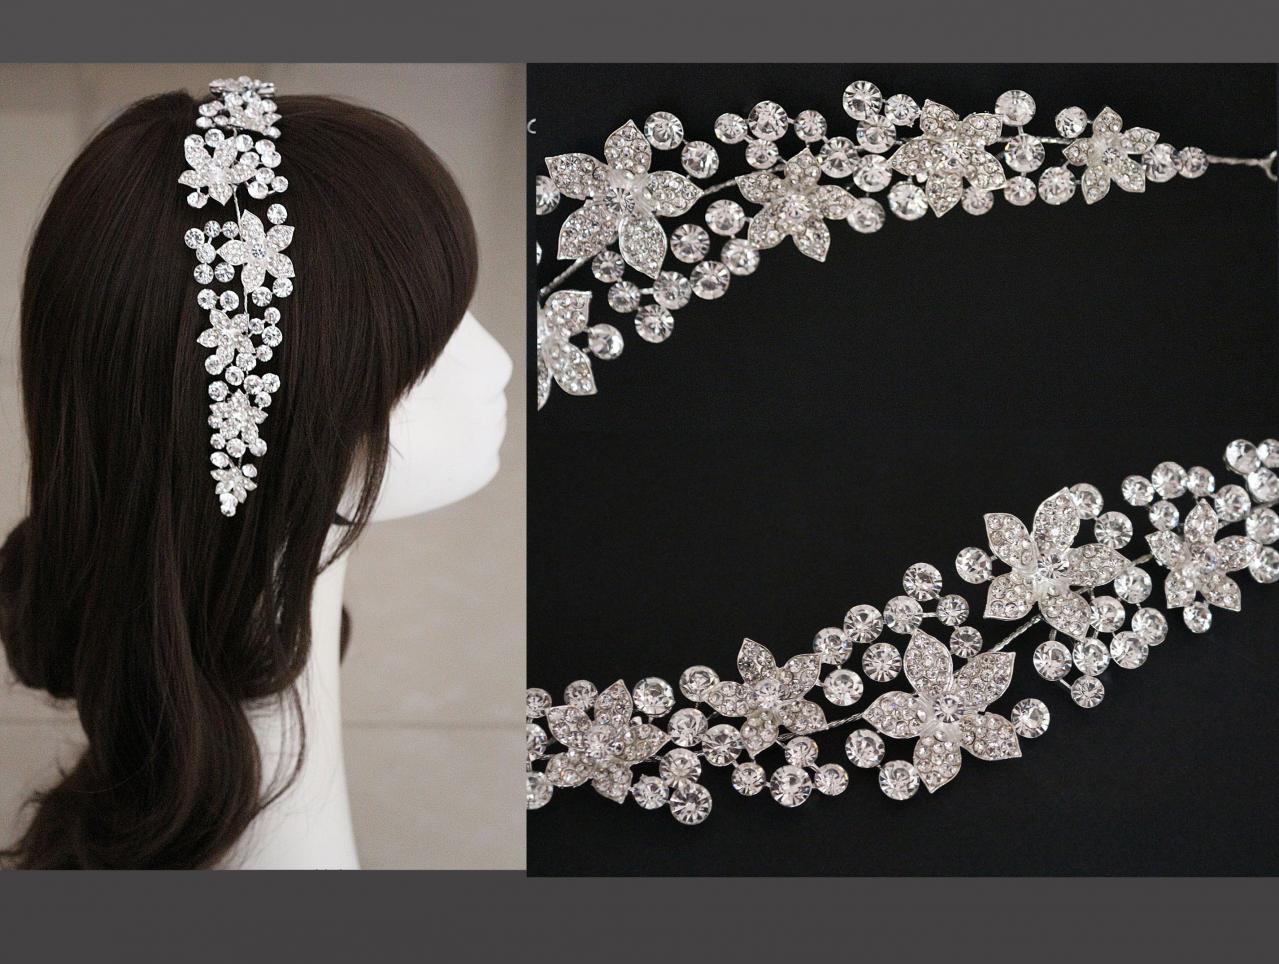 Rhinestone Crystal Hair Applique Tiara Bridal Wedding Brides Flower